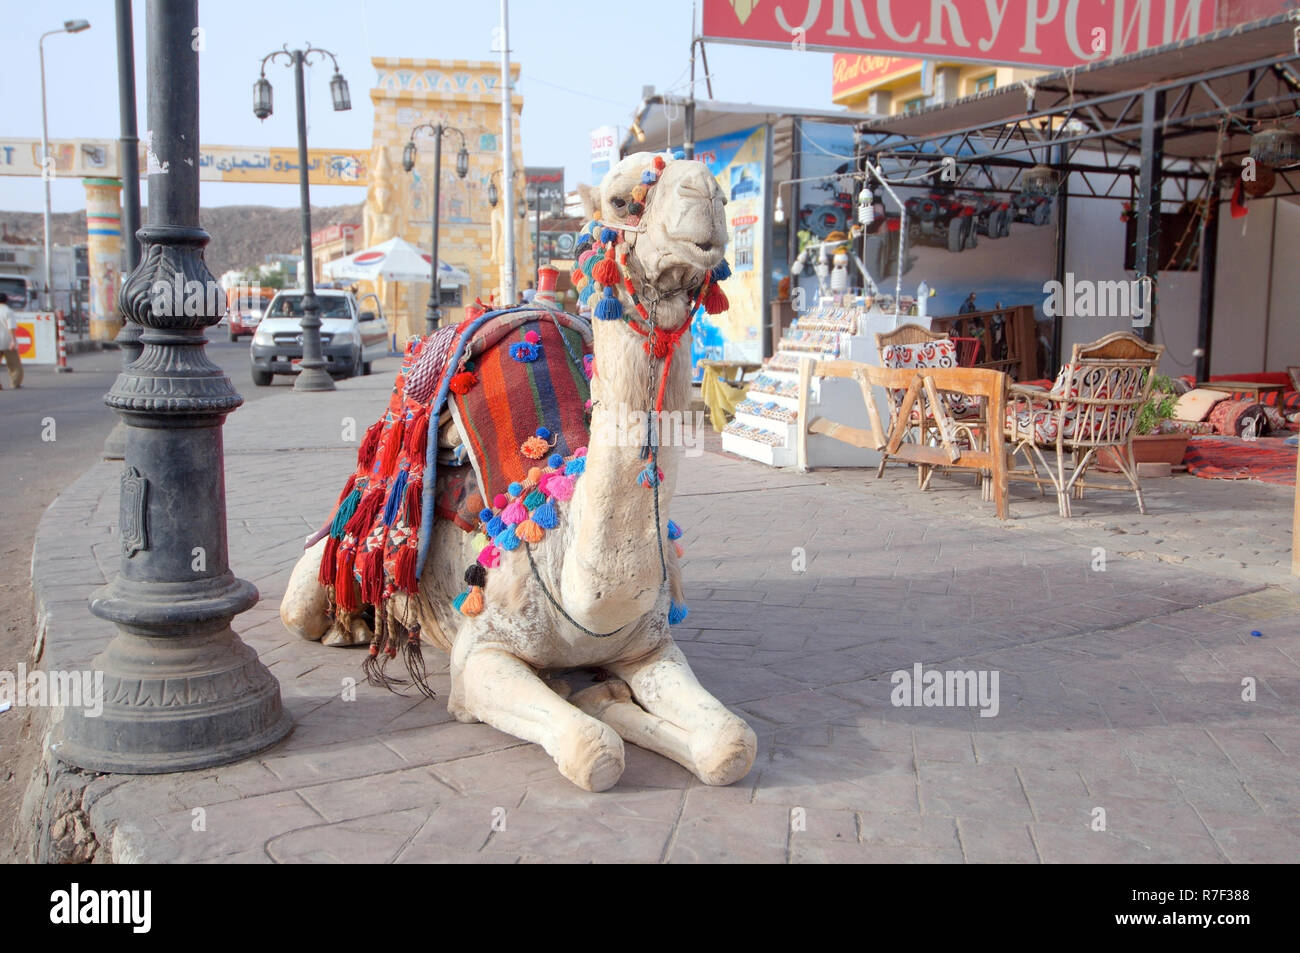 Le dromadaire ou chameau d'Arabie (Camelus dromedarius) assis sur le trottoir, du Vieux Marché, Charm el-Cheikh, Egypte Banque D'Images